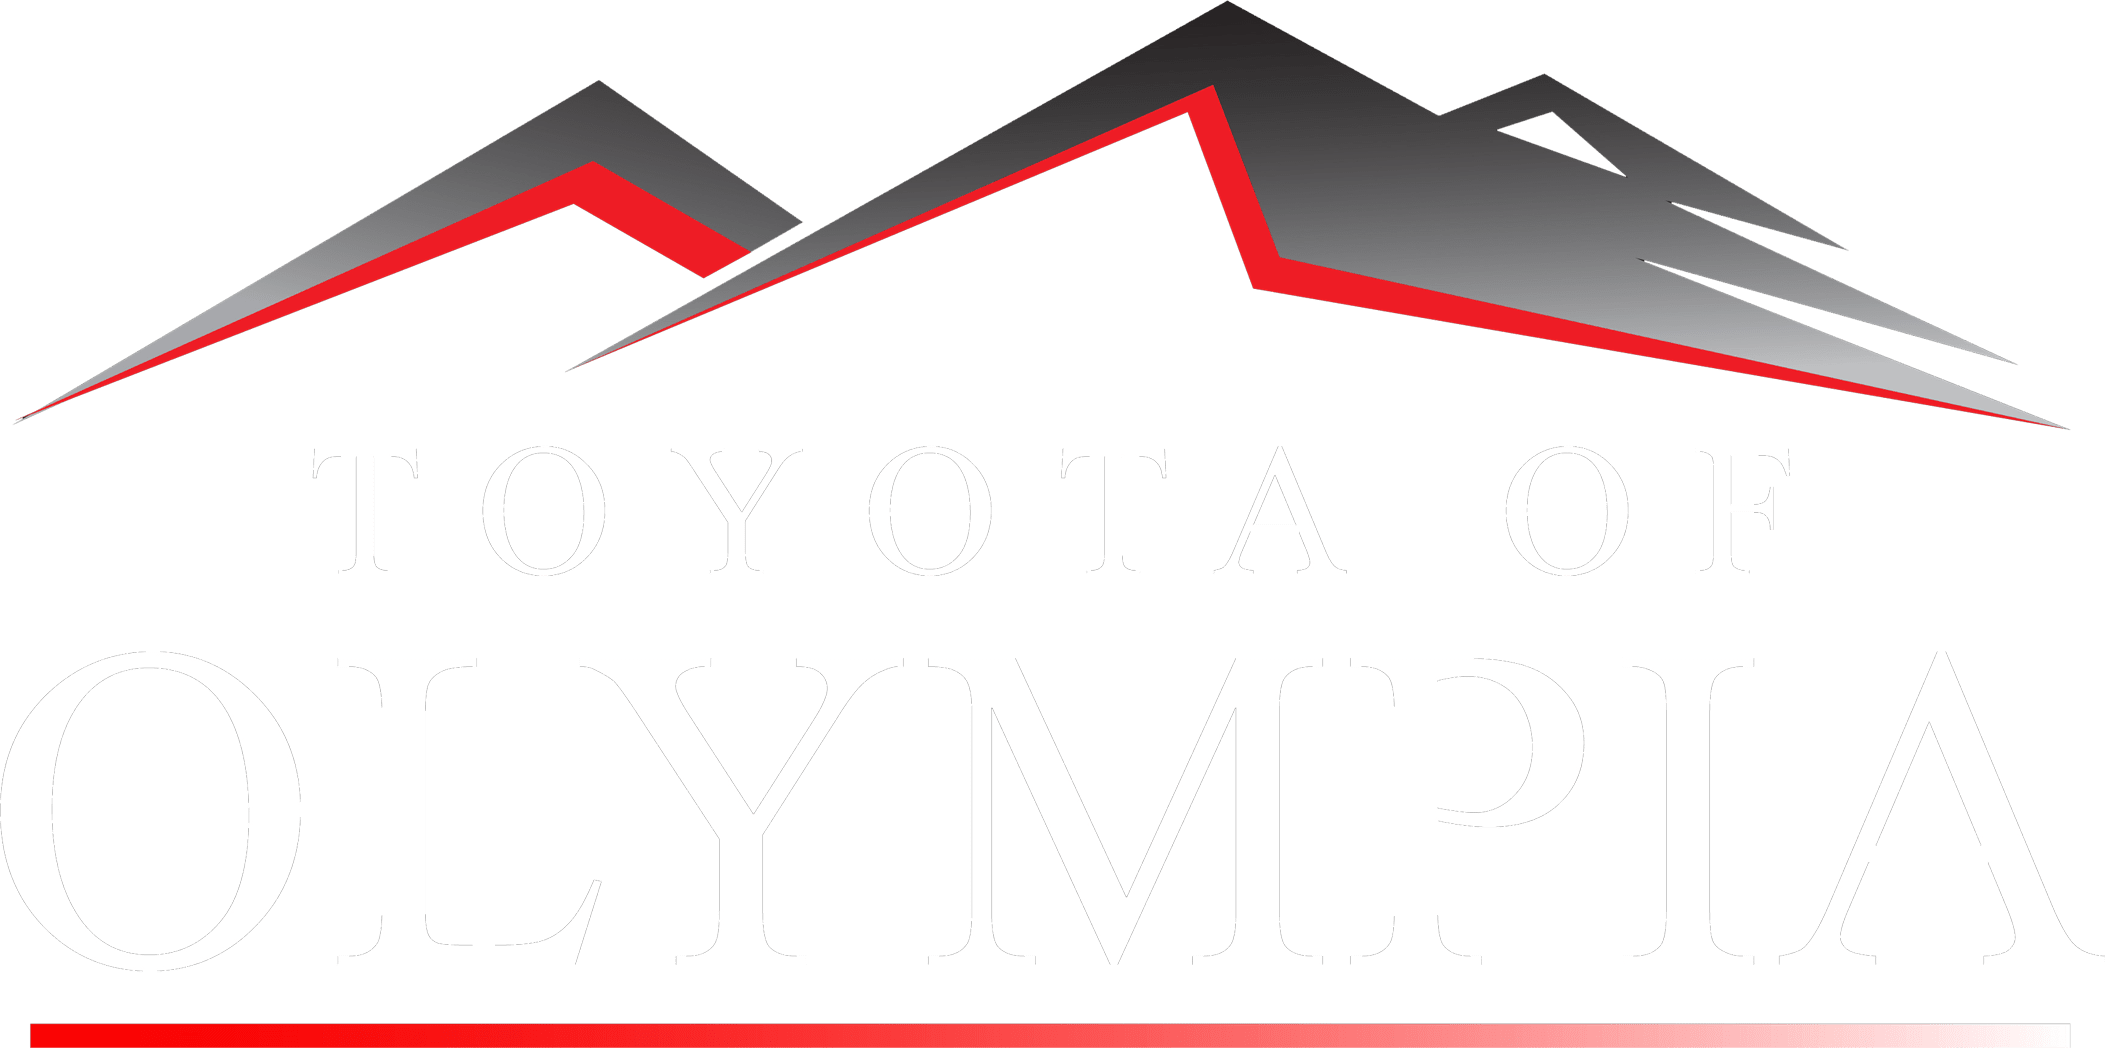 olympia white text logo